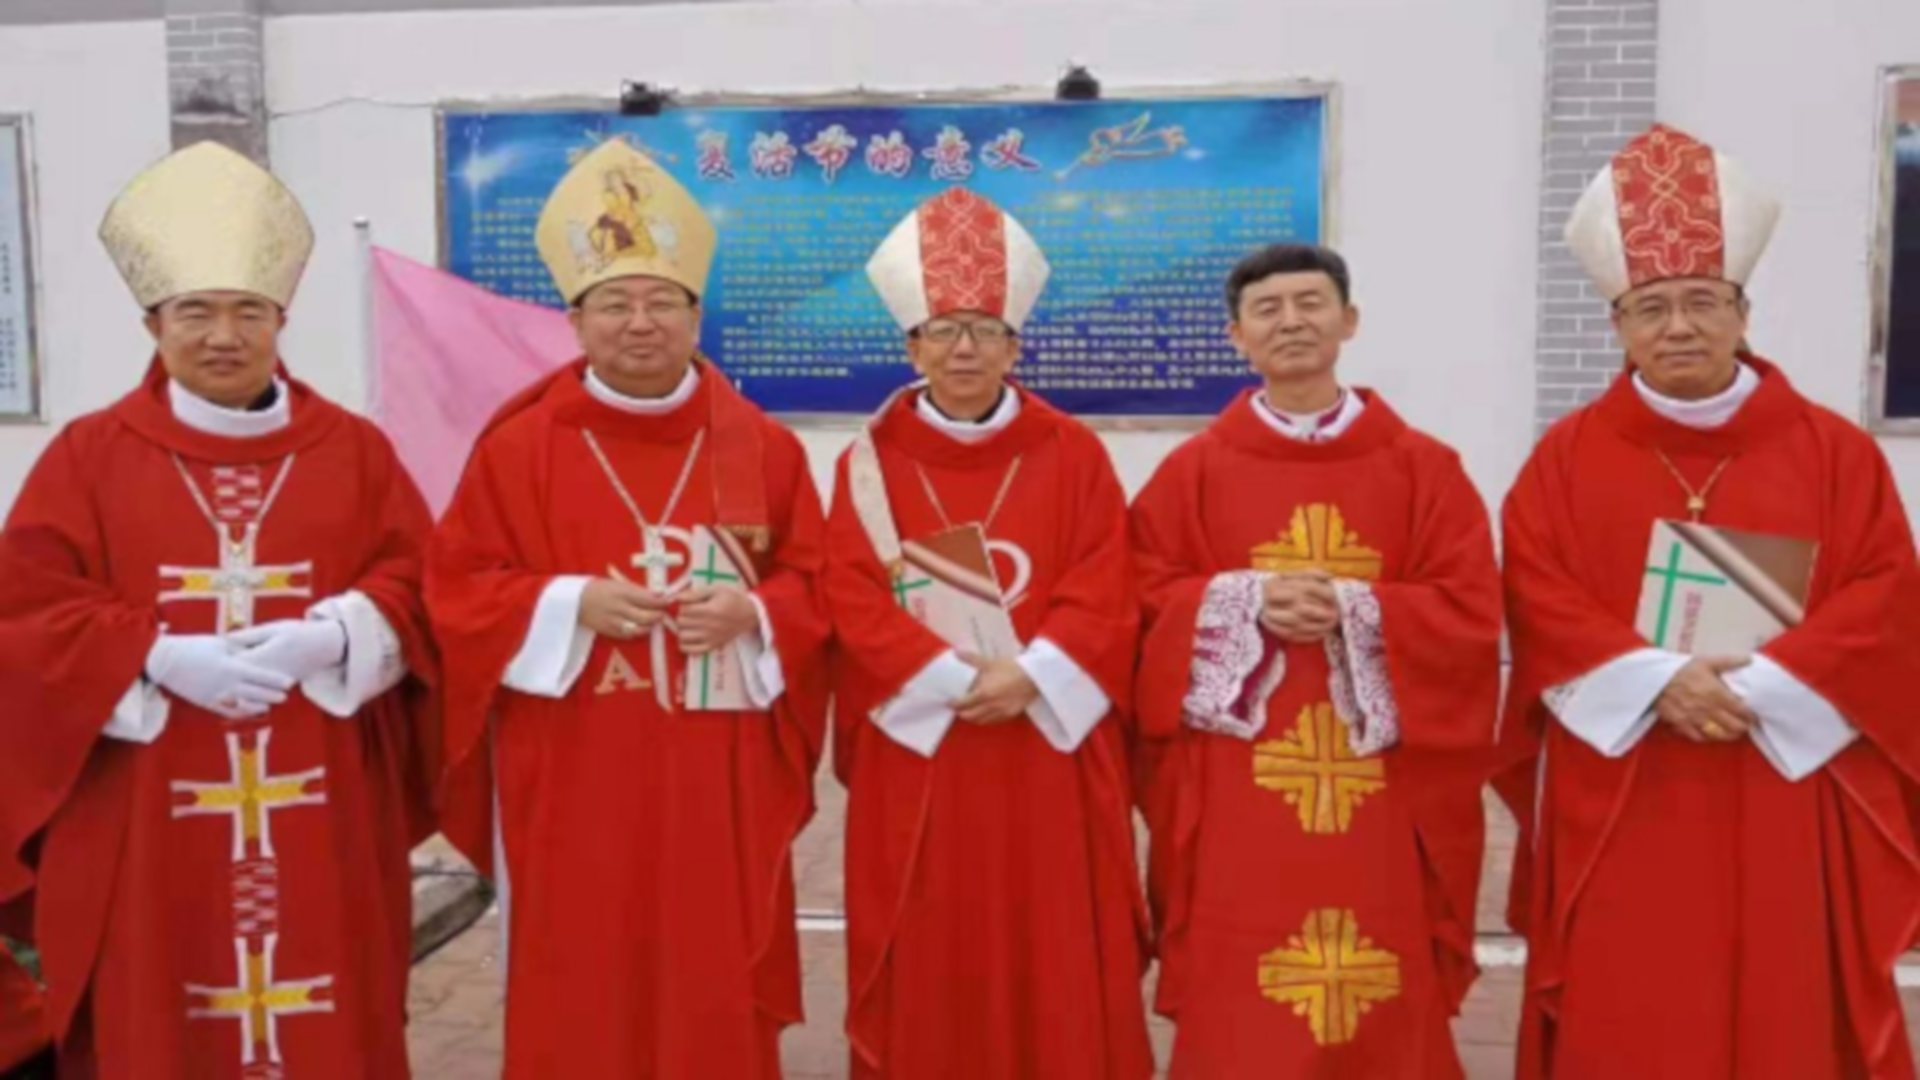 China episcopal ordination (26 Aug 2019) adjusted